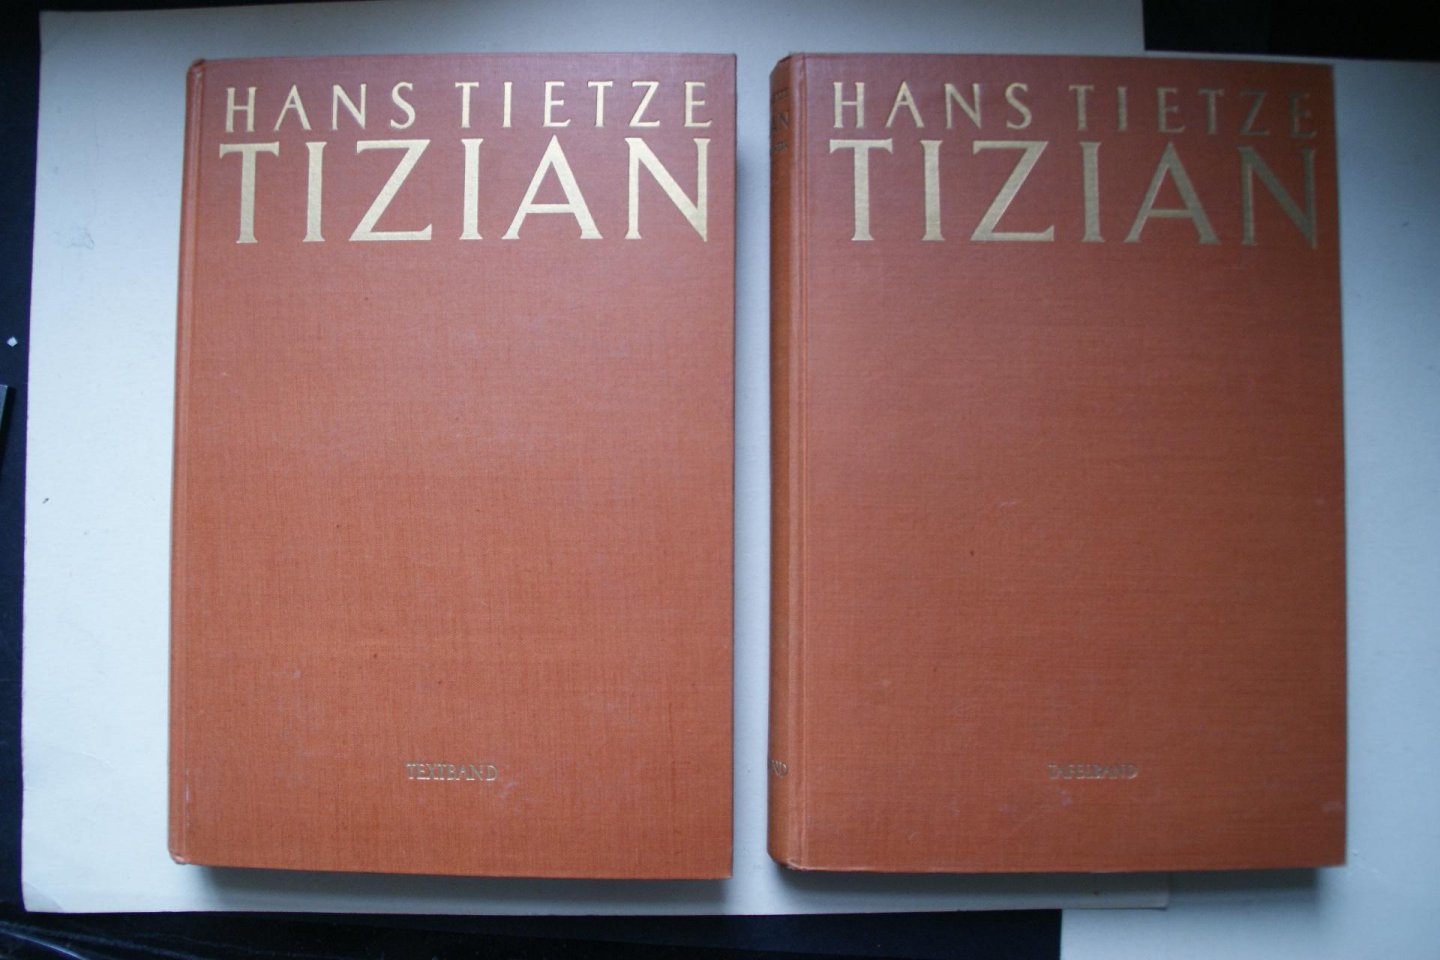 Hans Tietze - Compleet in 2 delen:  Tizian (Titiaan)   Leben Und Werk 2 Teile: Textband und Tafelband